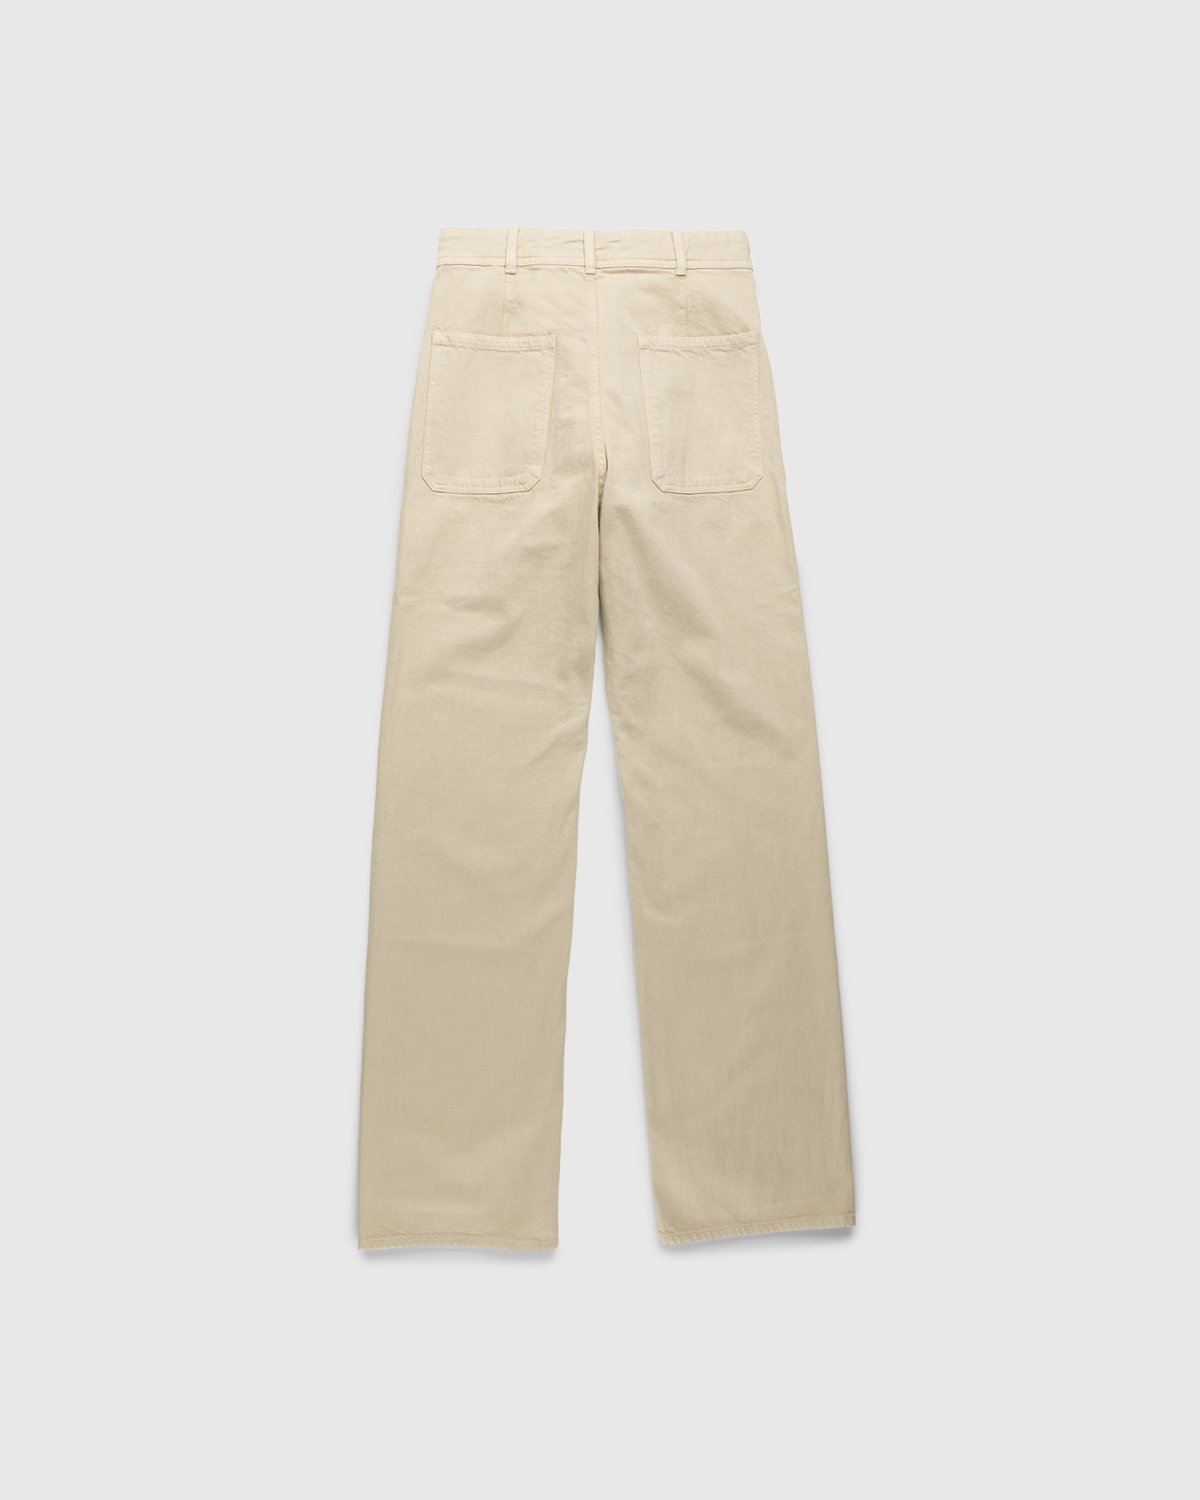 Lemaire – Italian-Woven Denim Sailor Pants Saltpeter - Pants - Beige - Image 2